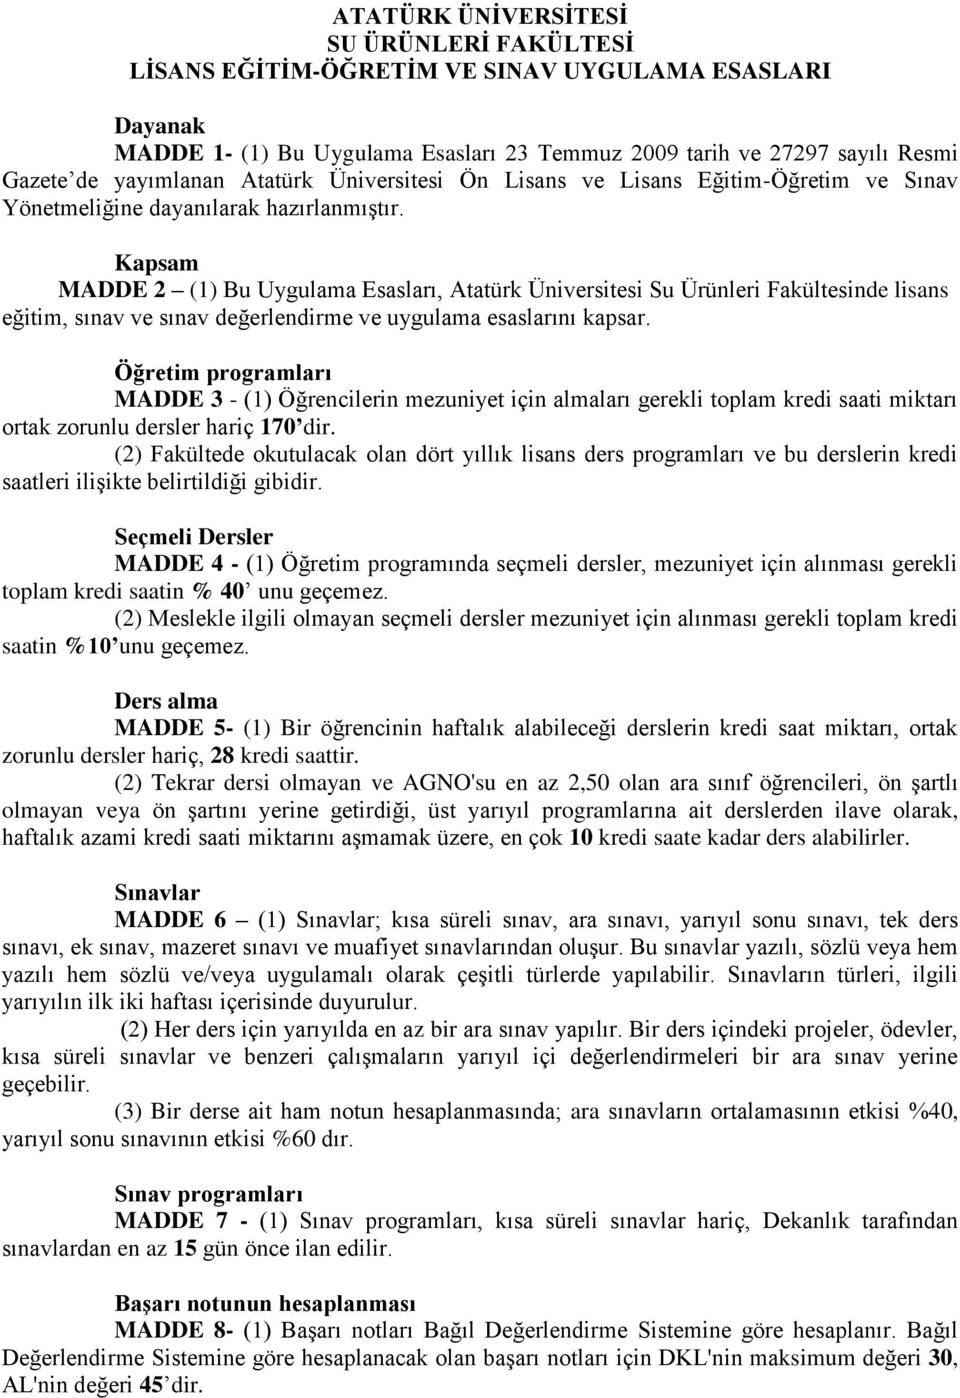 Kapsam MADDE 2 (1) Bu Uygulama Esasları, Atatürk Üniversitesi Su Ürünleri Fakültesinde lisans eğitim, sınav ve sınav değerlendirme ve uygulama esaslarını kapsar.